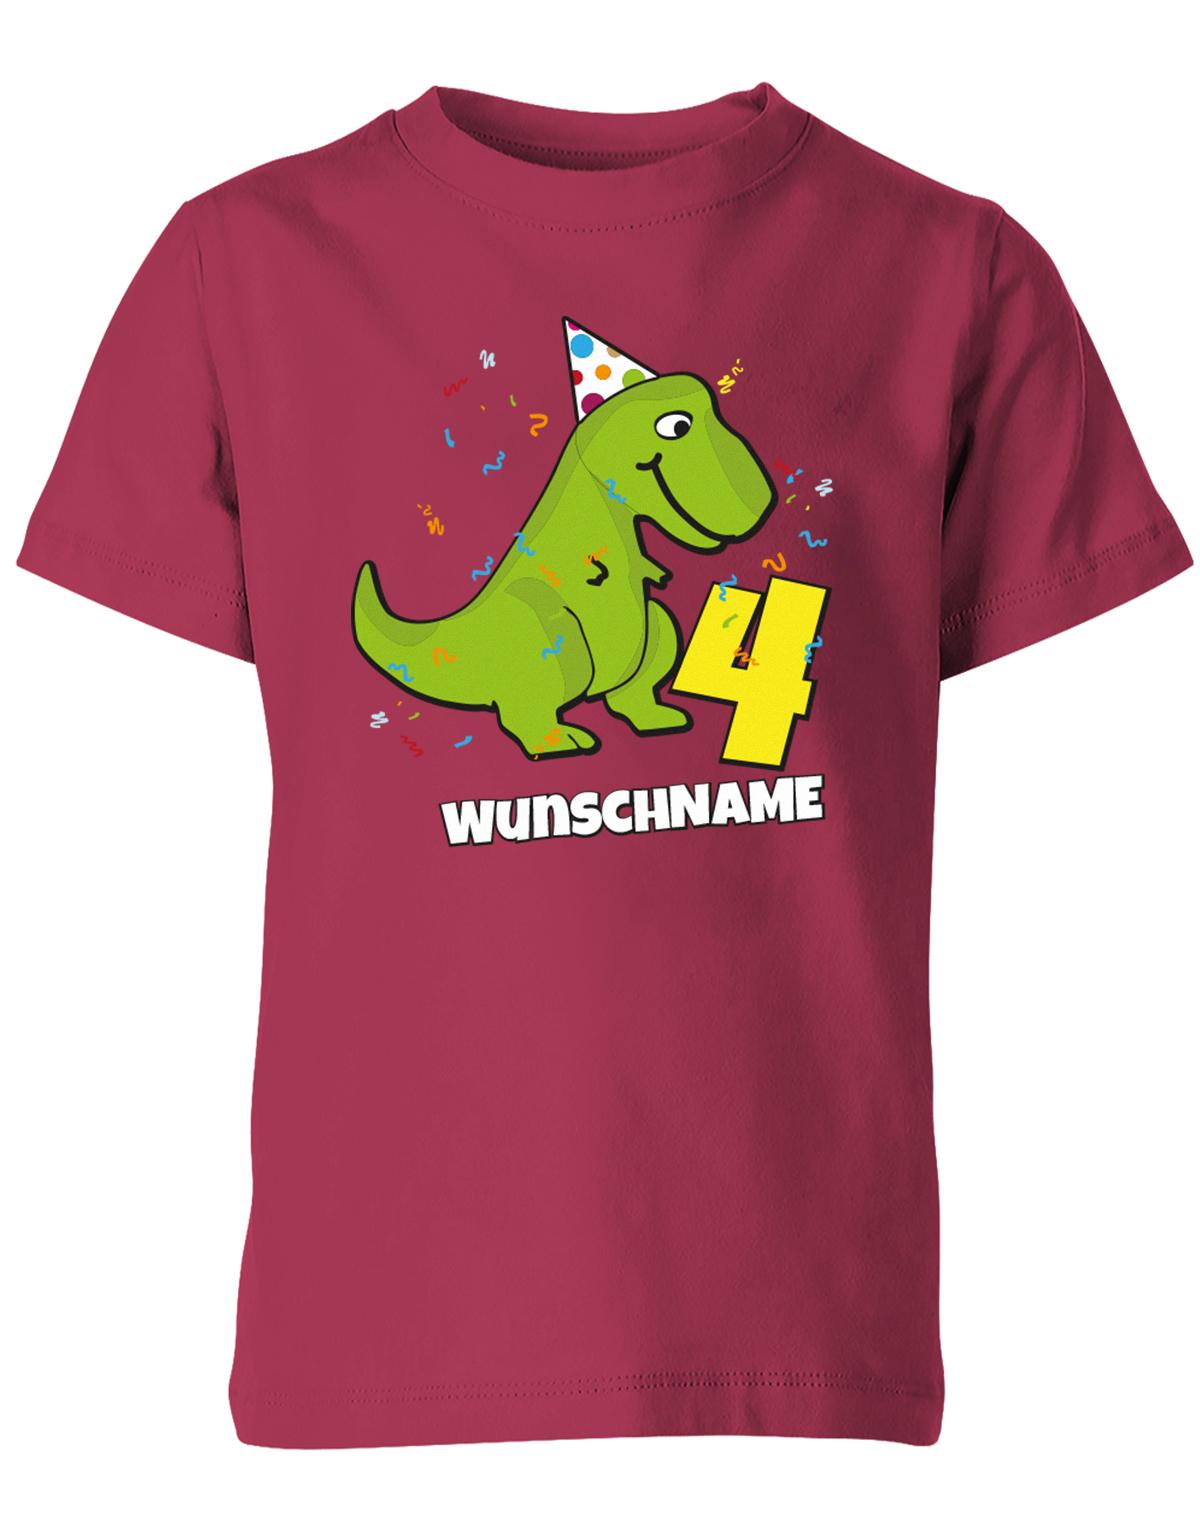 ich-bin-4-Dinosaurier-t-rex-wunschname-geburtstag-kinder-shirt-sorbet